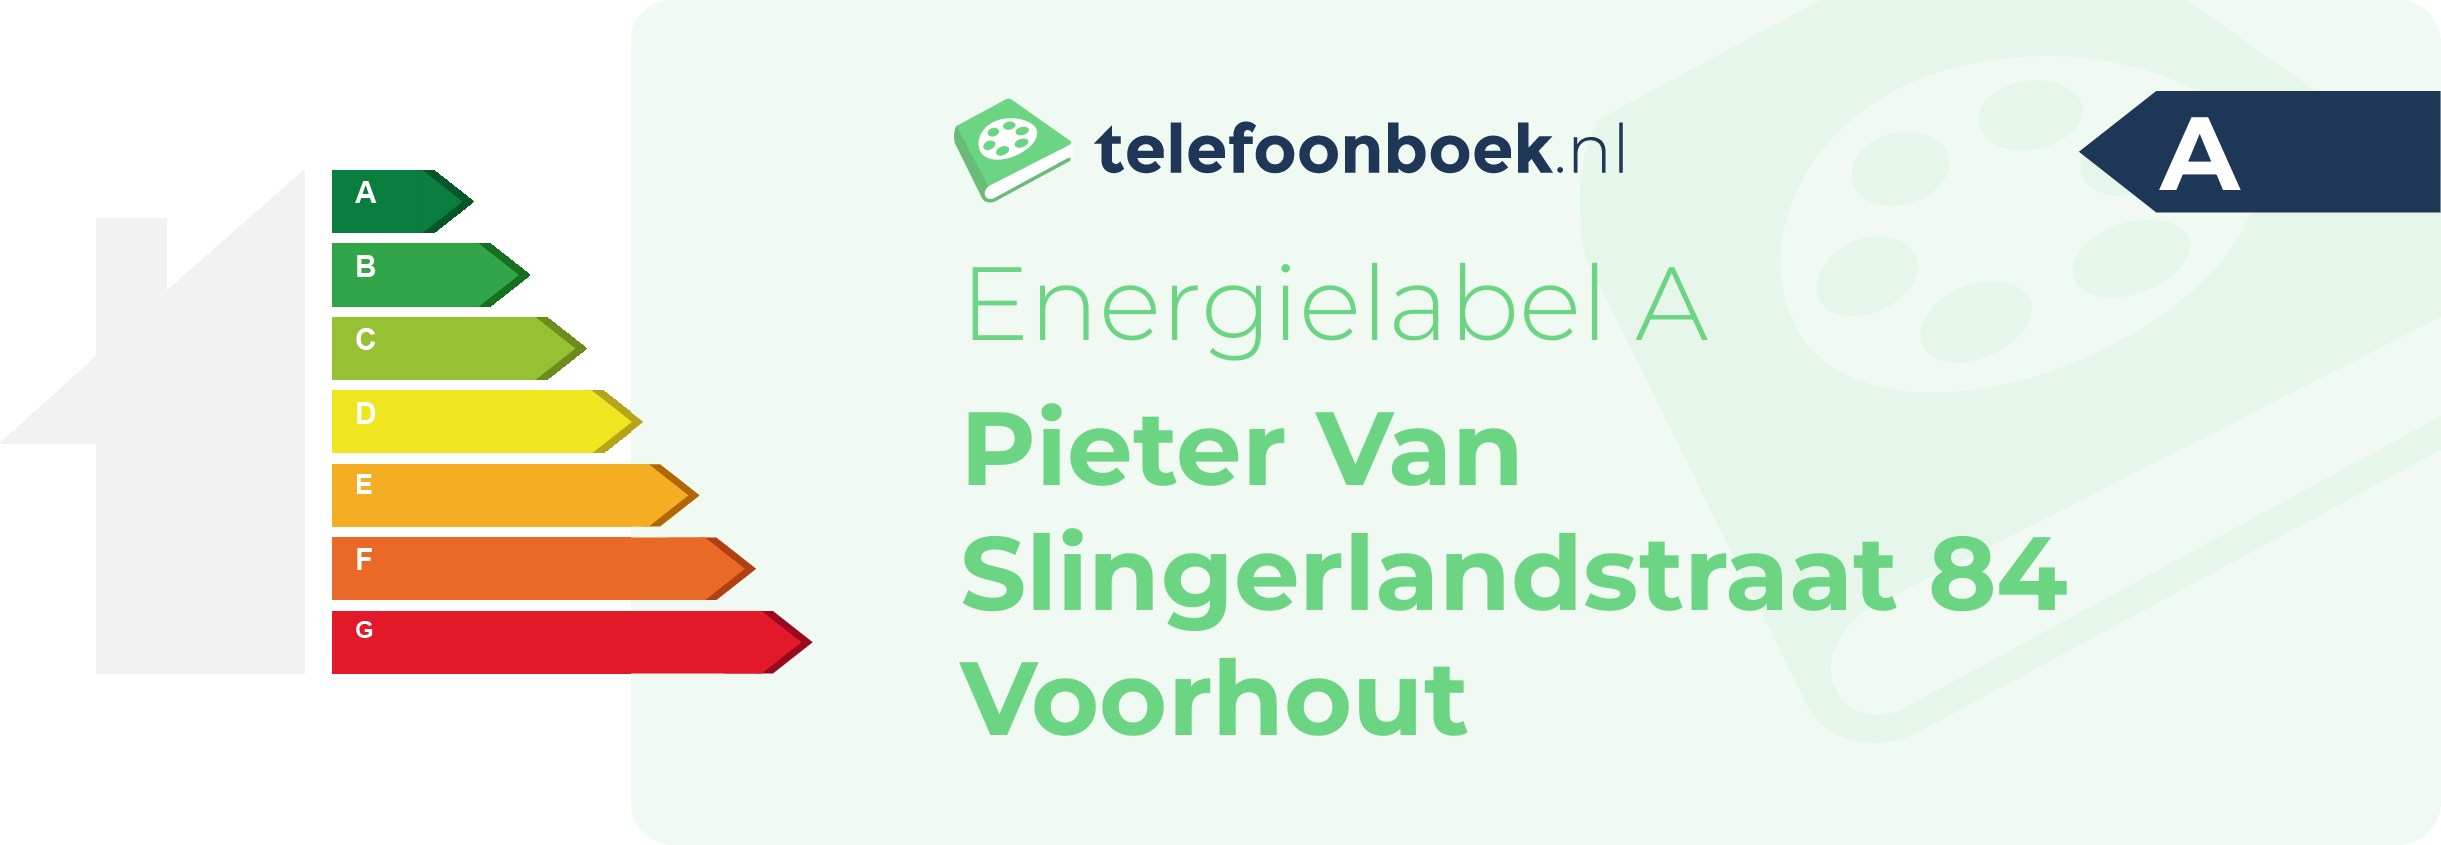 Energielabel Pieter Van Slingerlandstraat 84 Voorhout